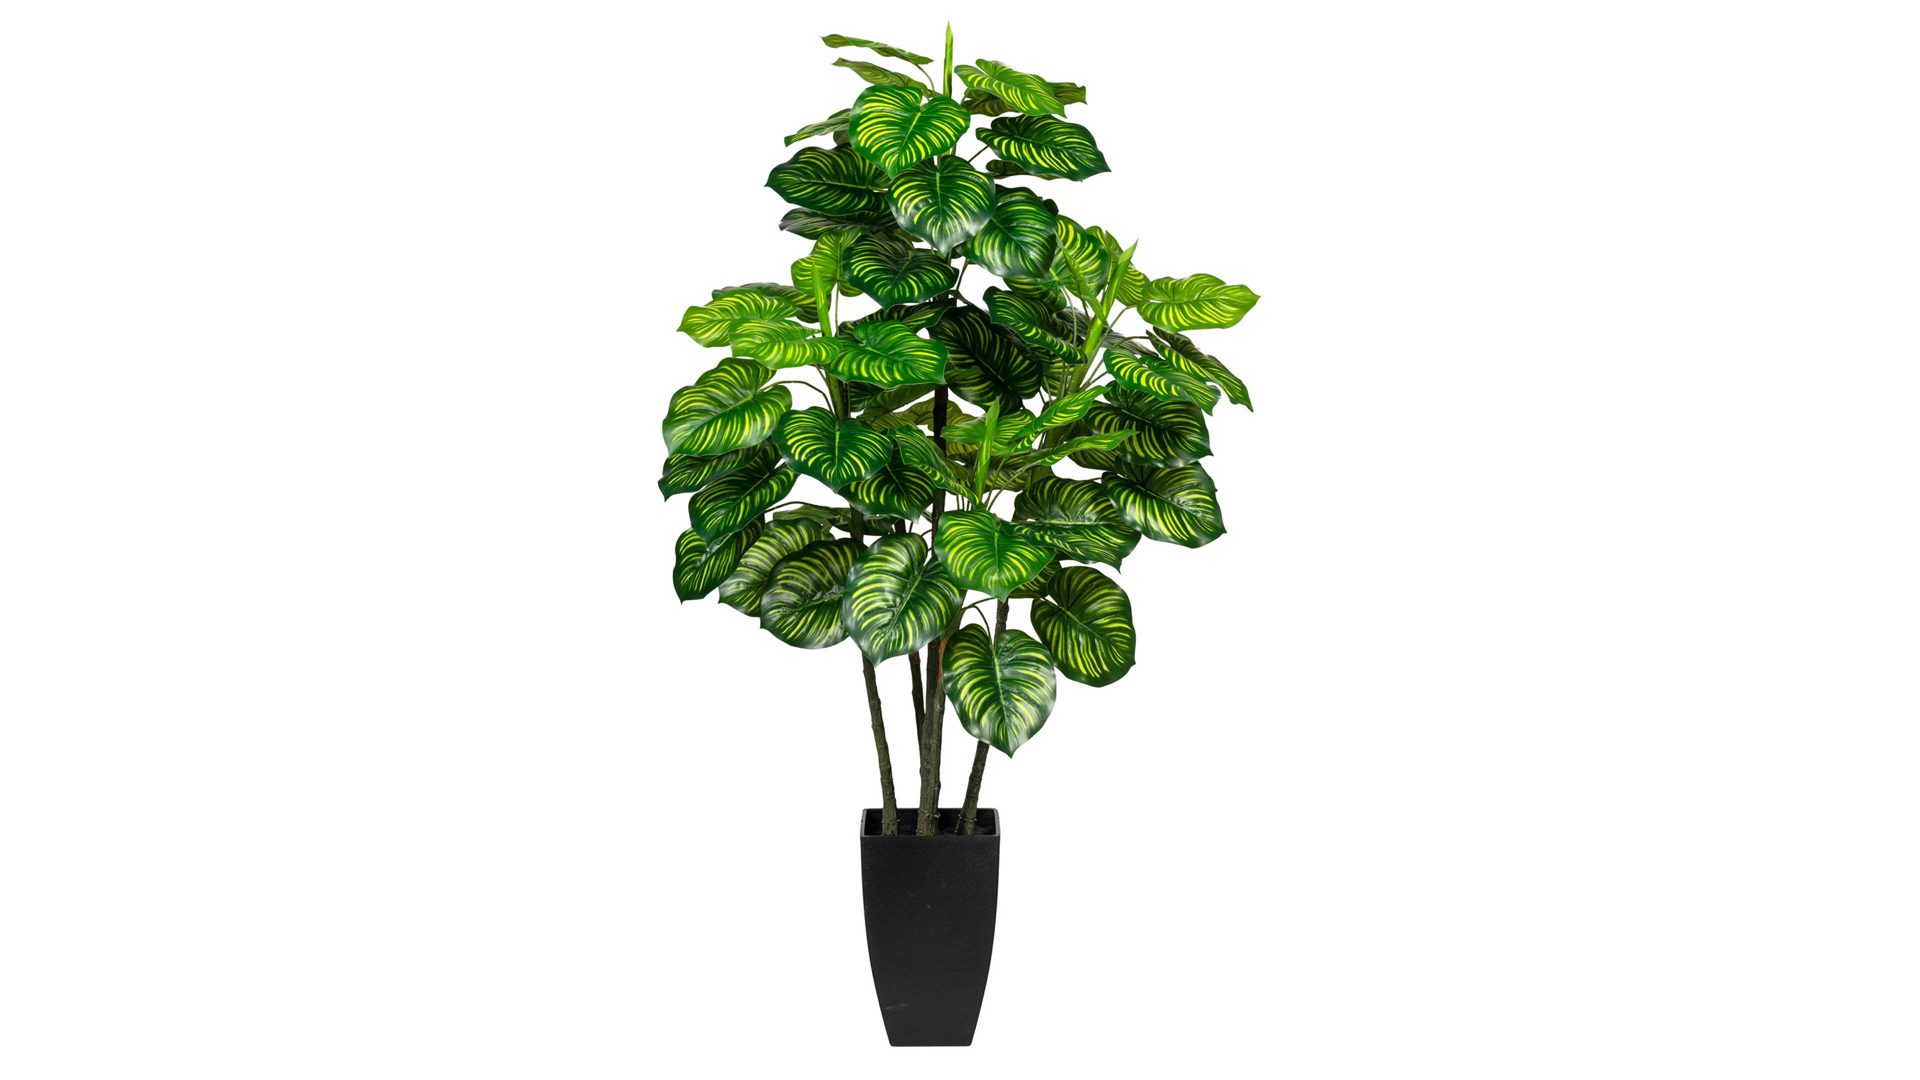 Pflanze Gasper aus Kunststoff in Grün Pfeilwurzgewächs Maranta grün-gelber Kunststoff & schwarzer Topf - Höhe ca. 105 cm